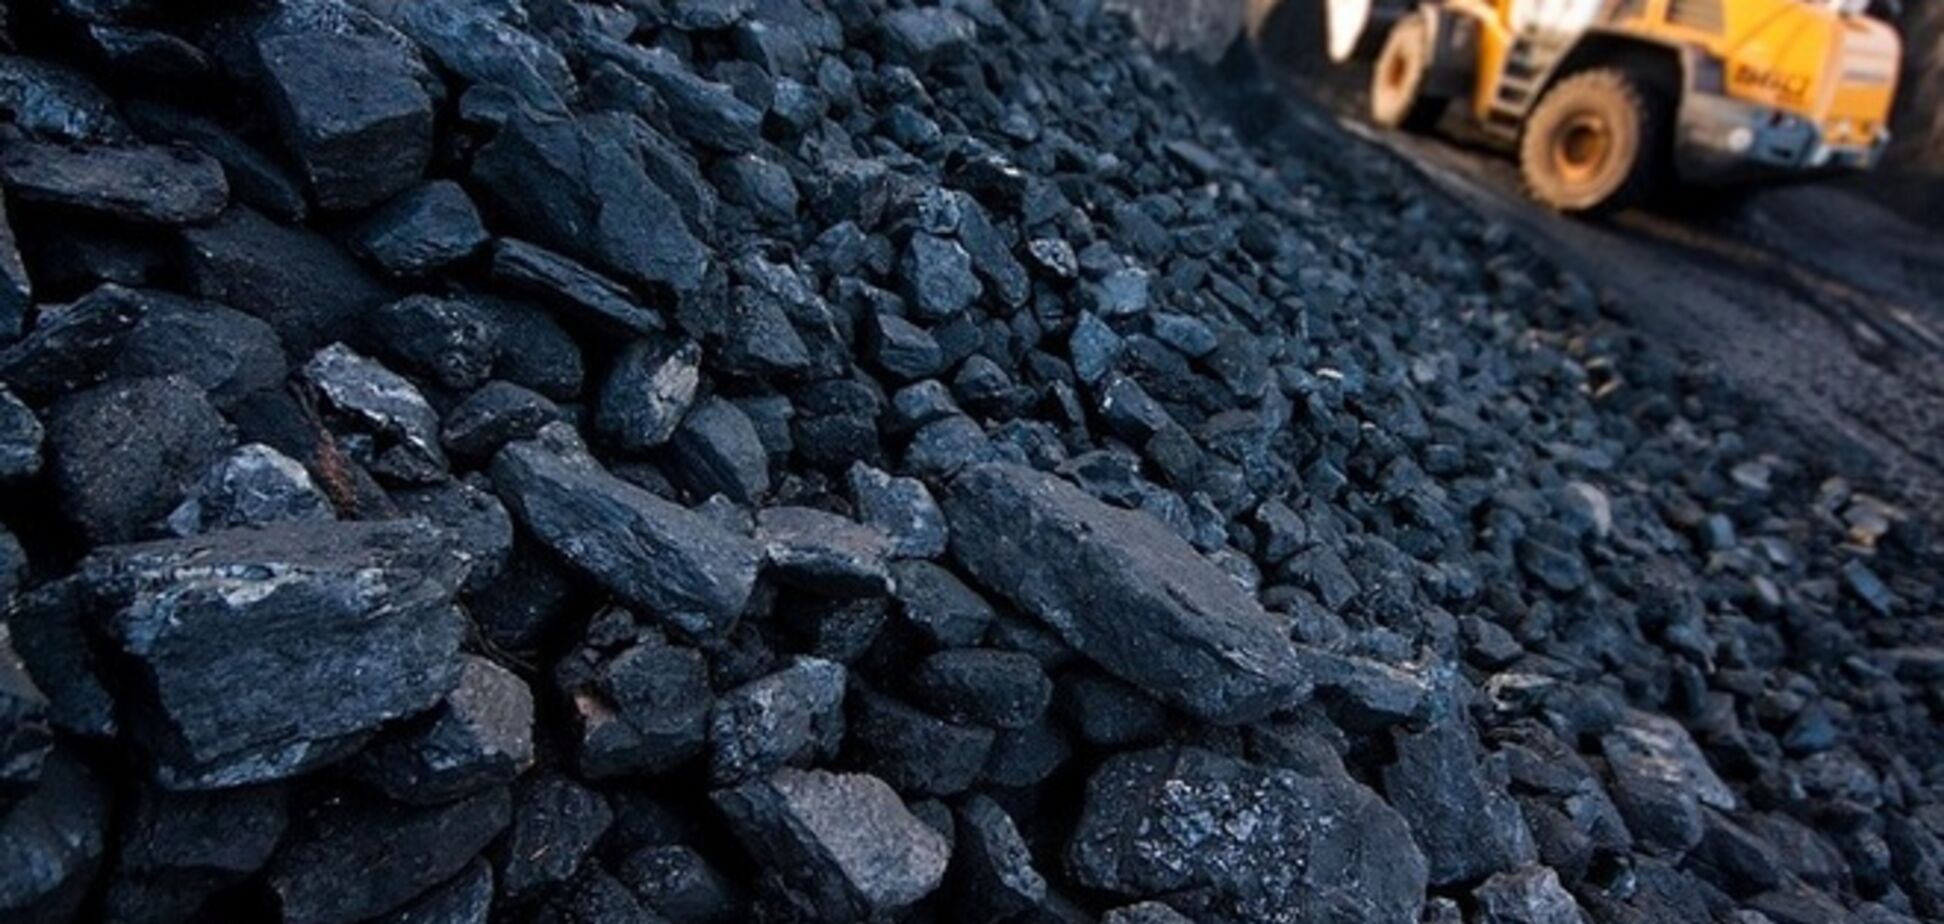  Антимонопольный комитет заблокировал закупку угля для железных дорог